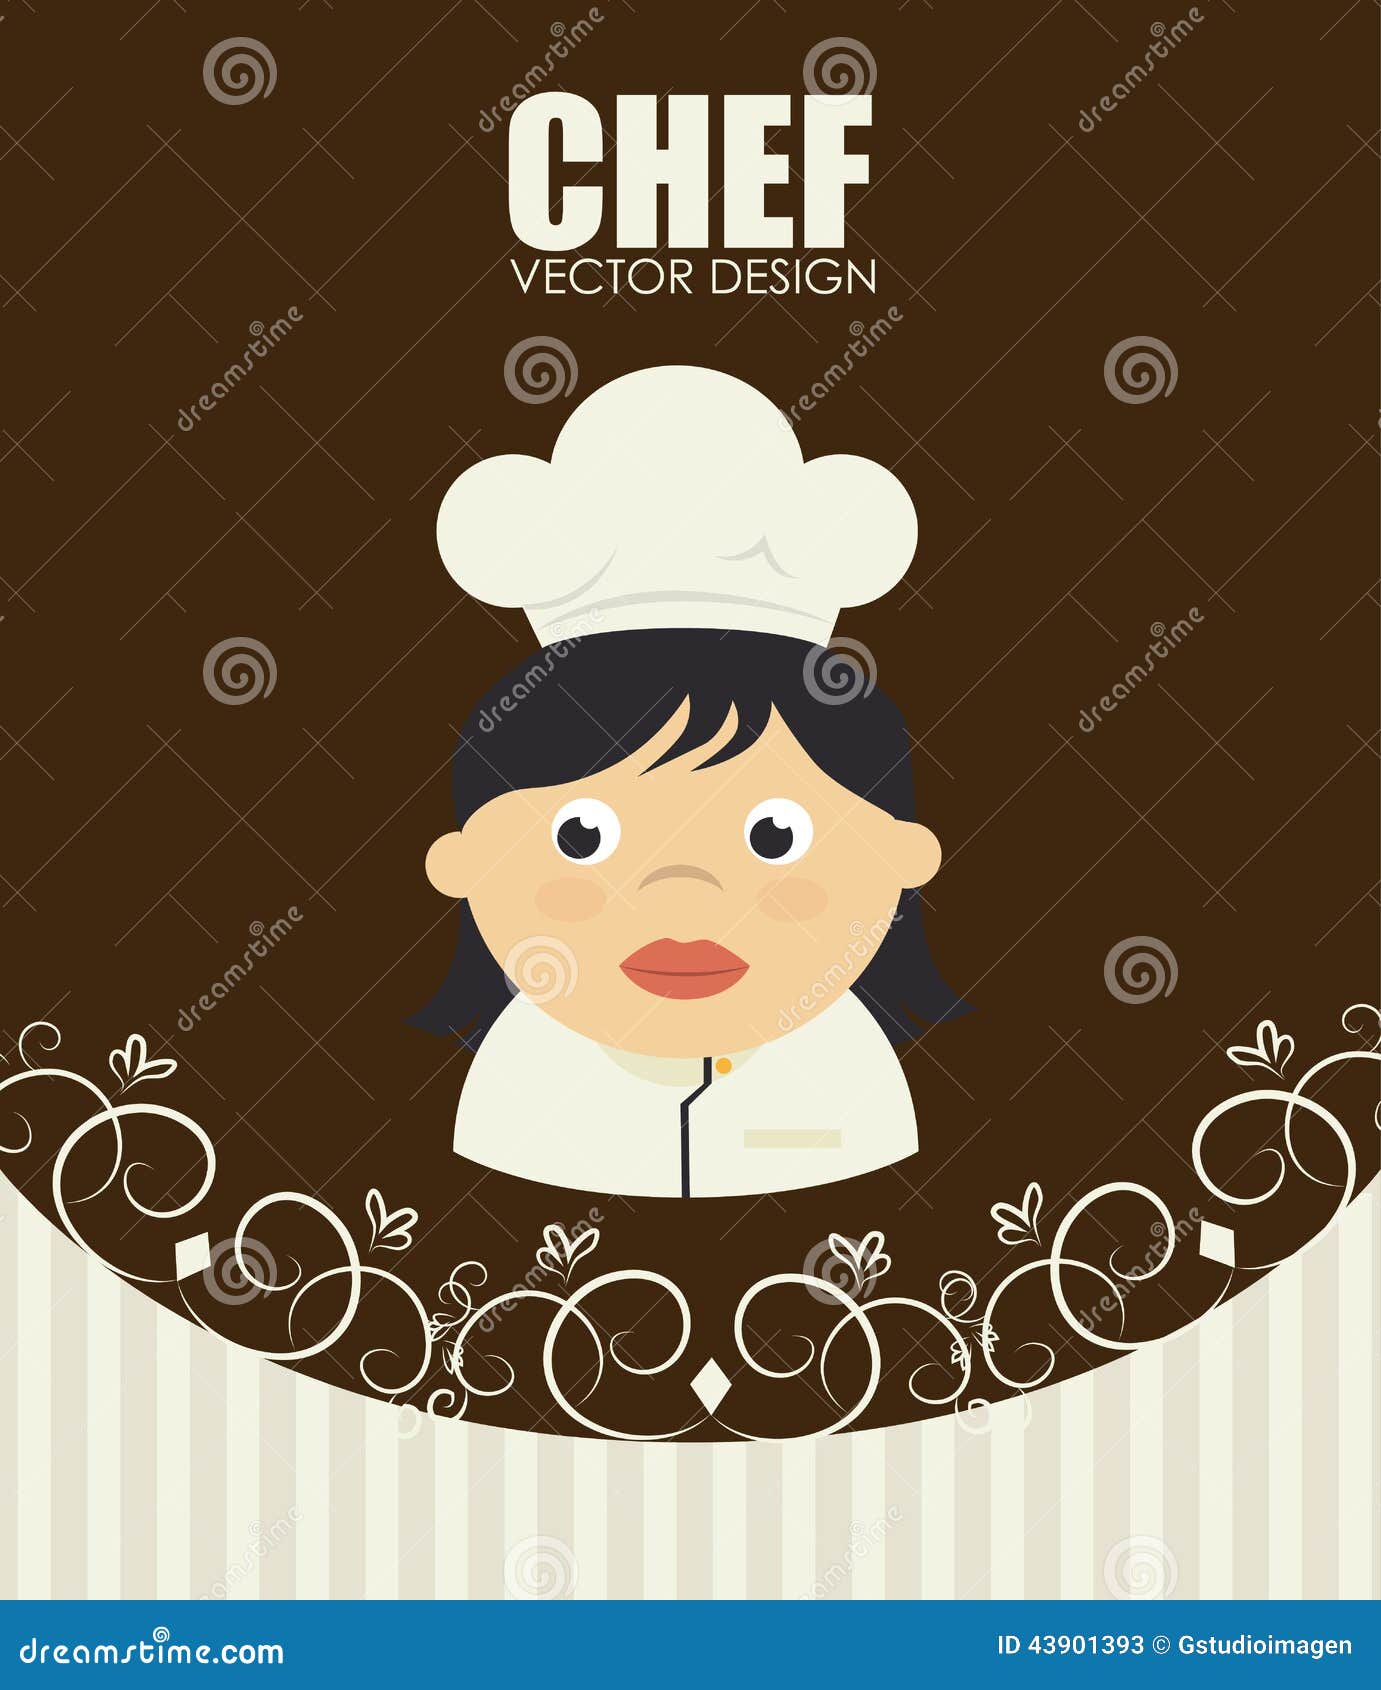 Restaurant design stock vector. Illustration of banner - 43901393